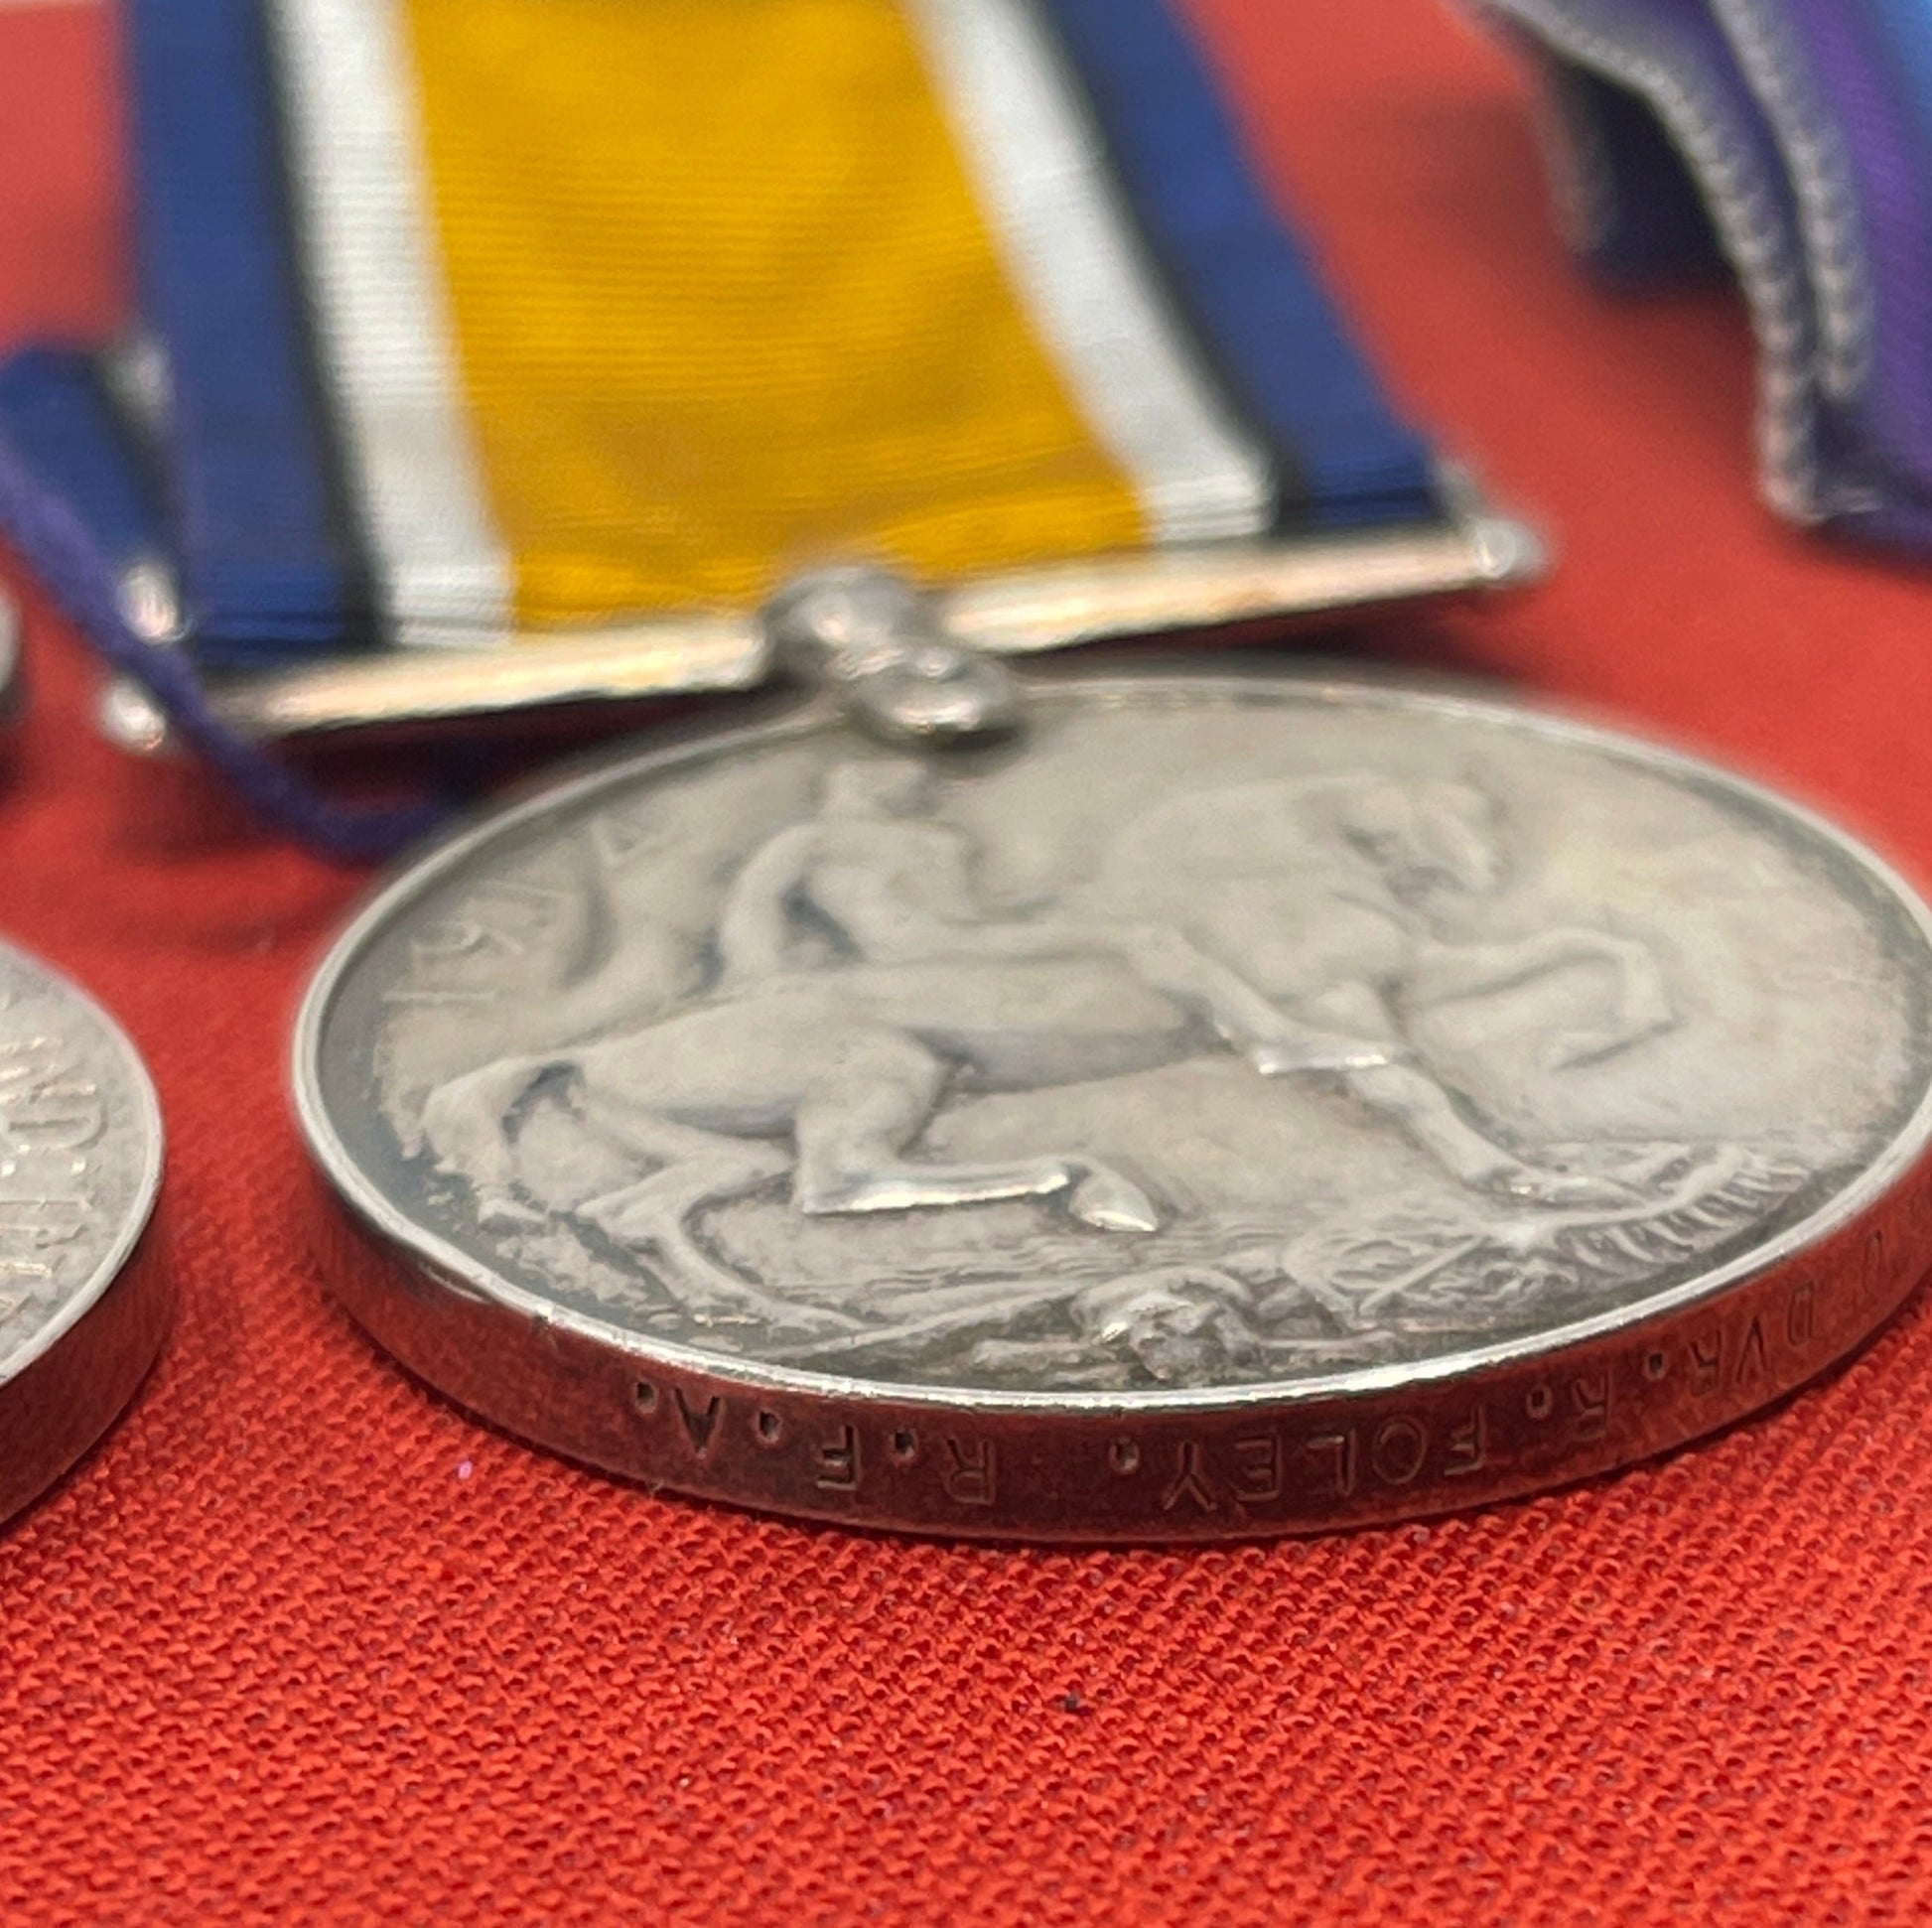 A Great War MM Medal Trio  Dvr R Foley 41 Brigade RFA Albert Medal Awardee